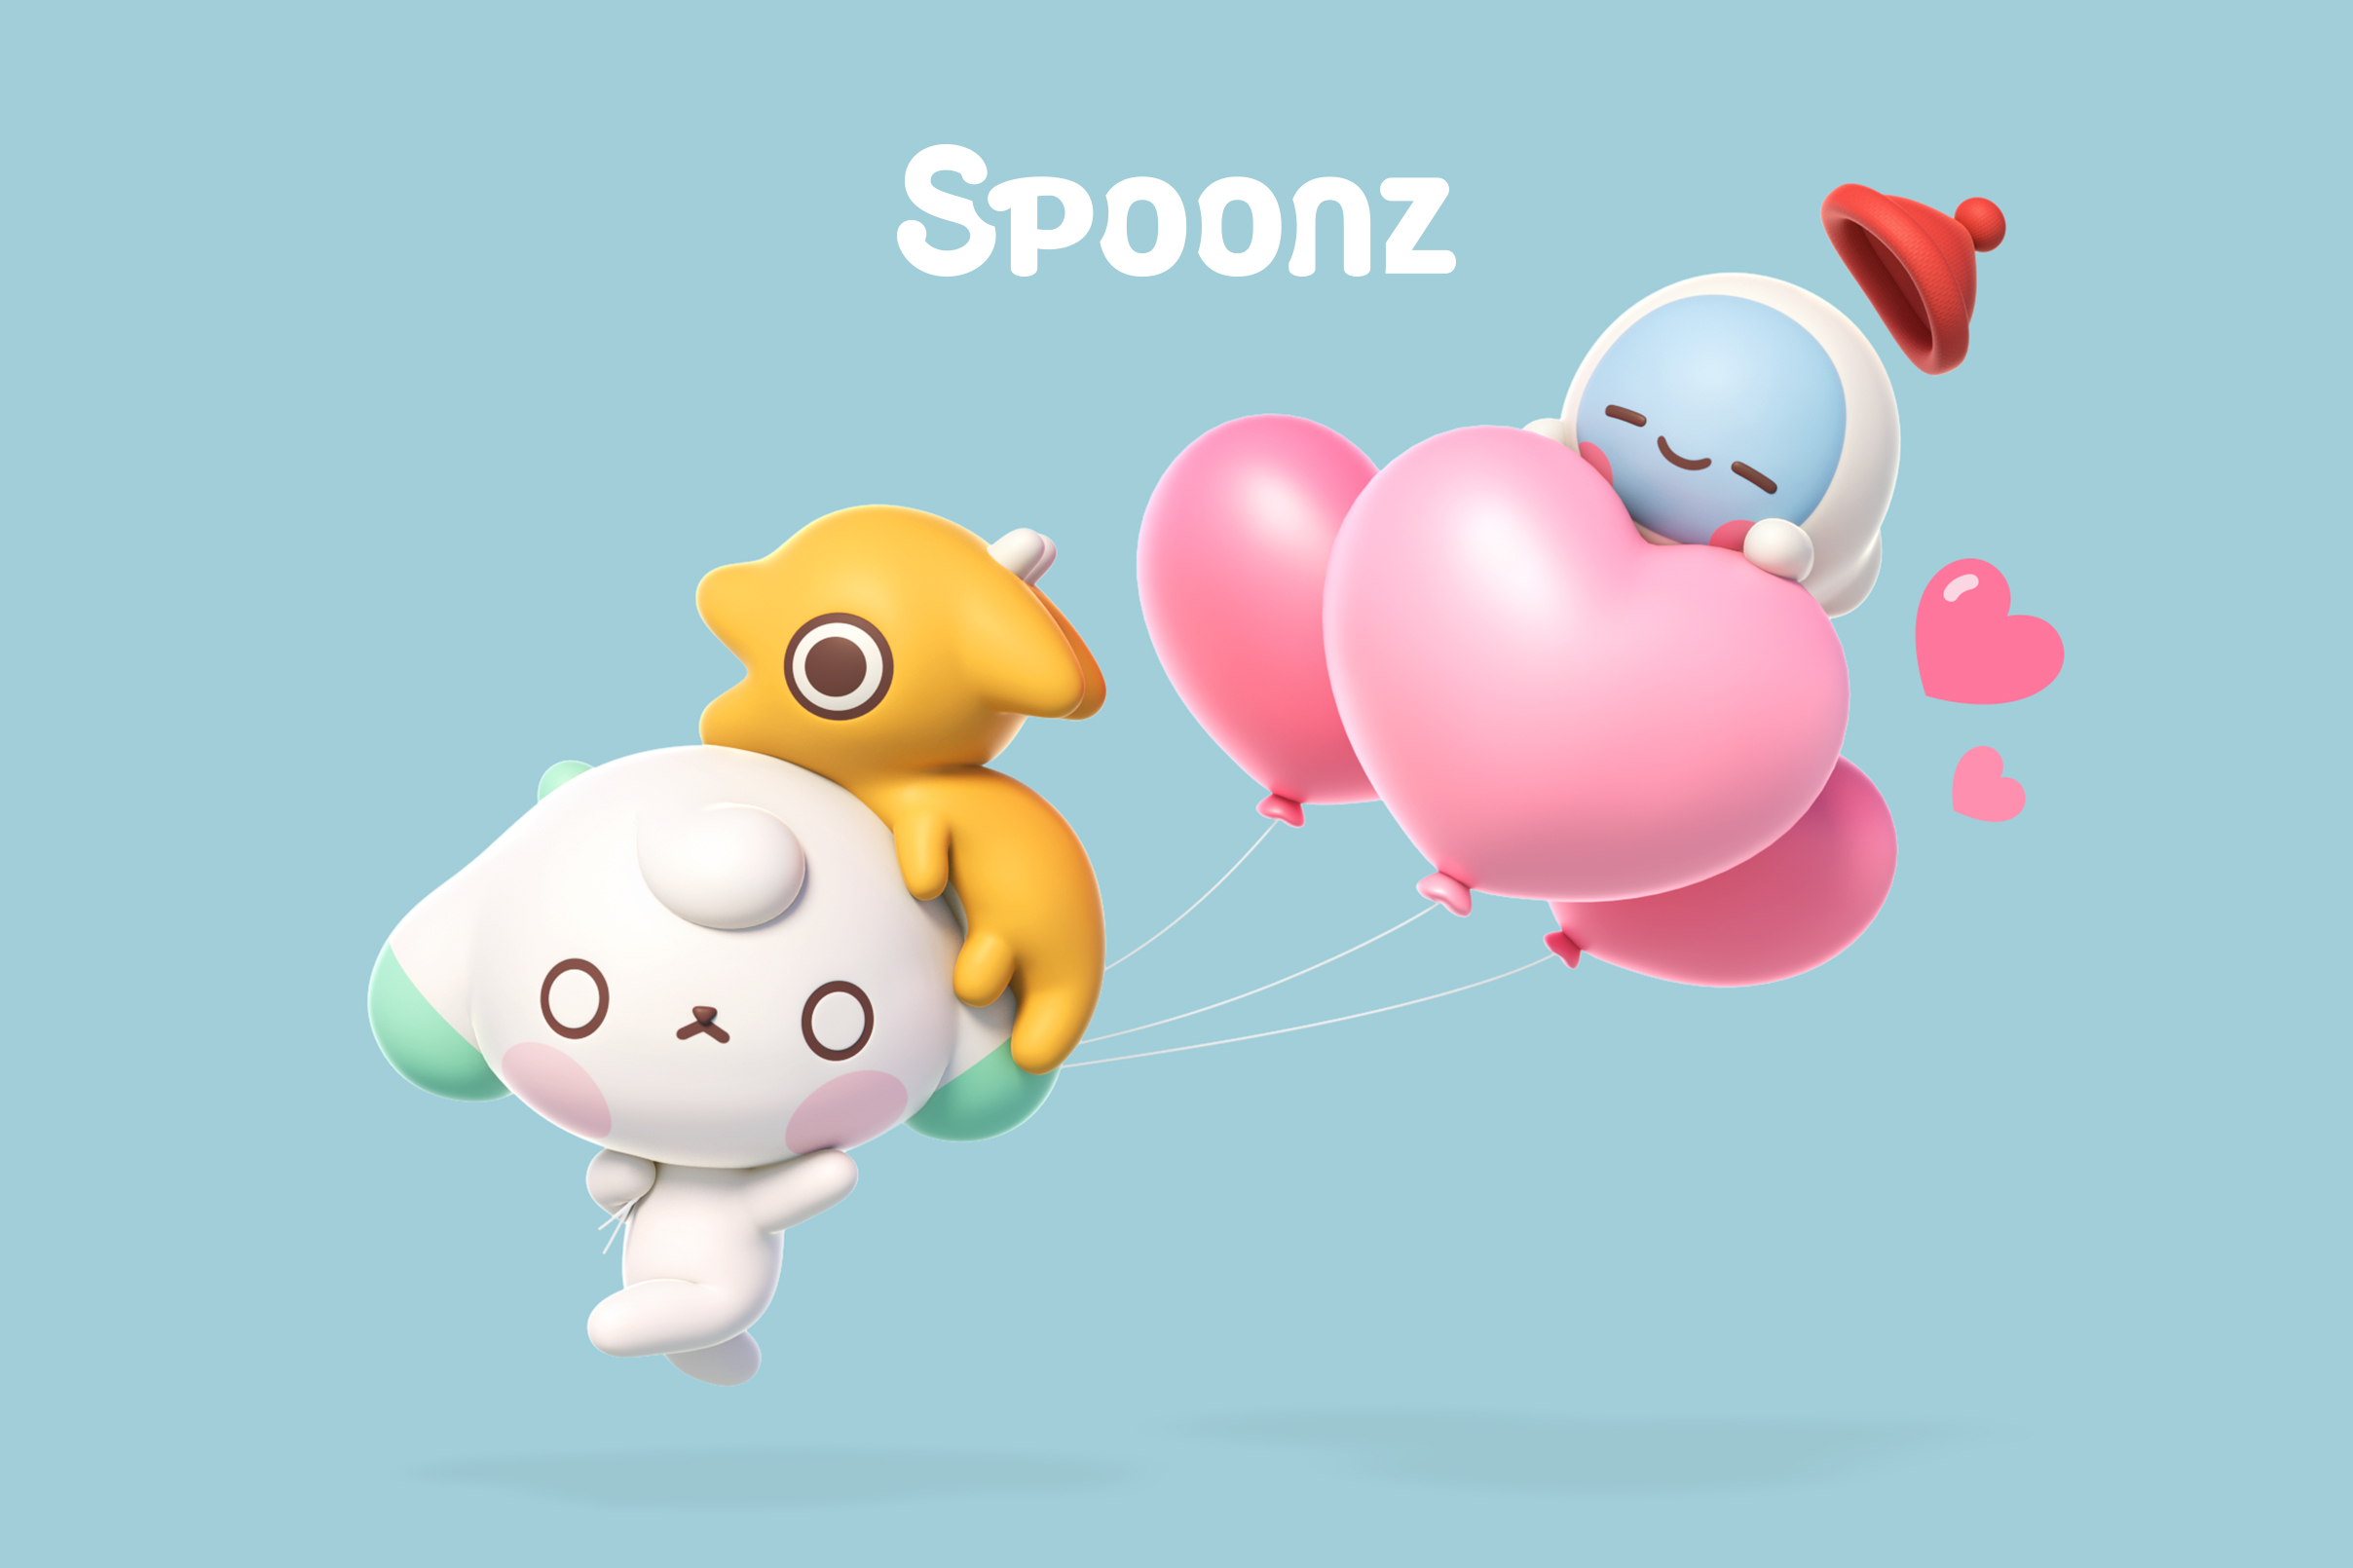 spoonz image